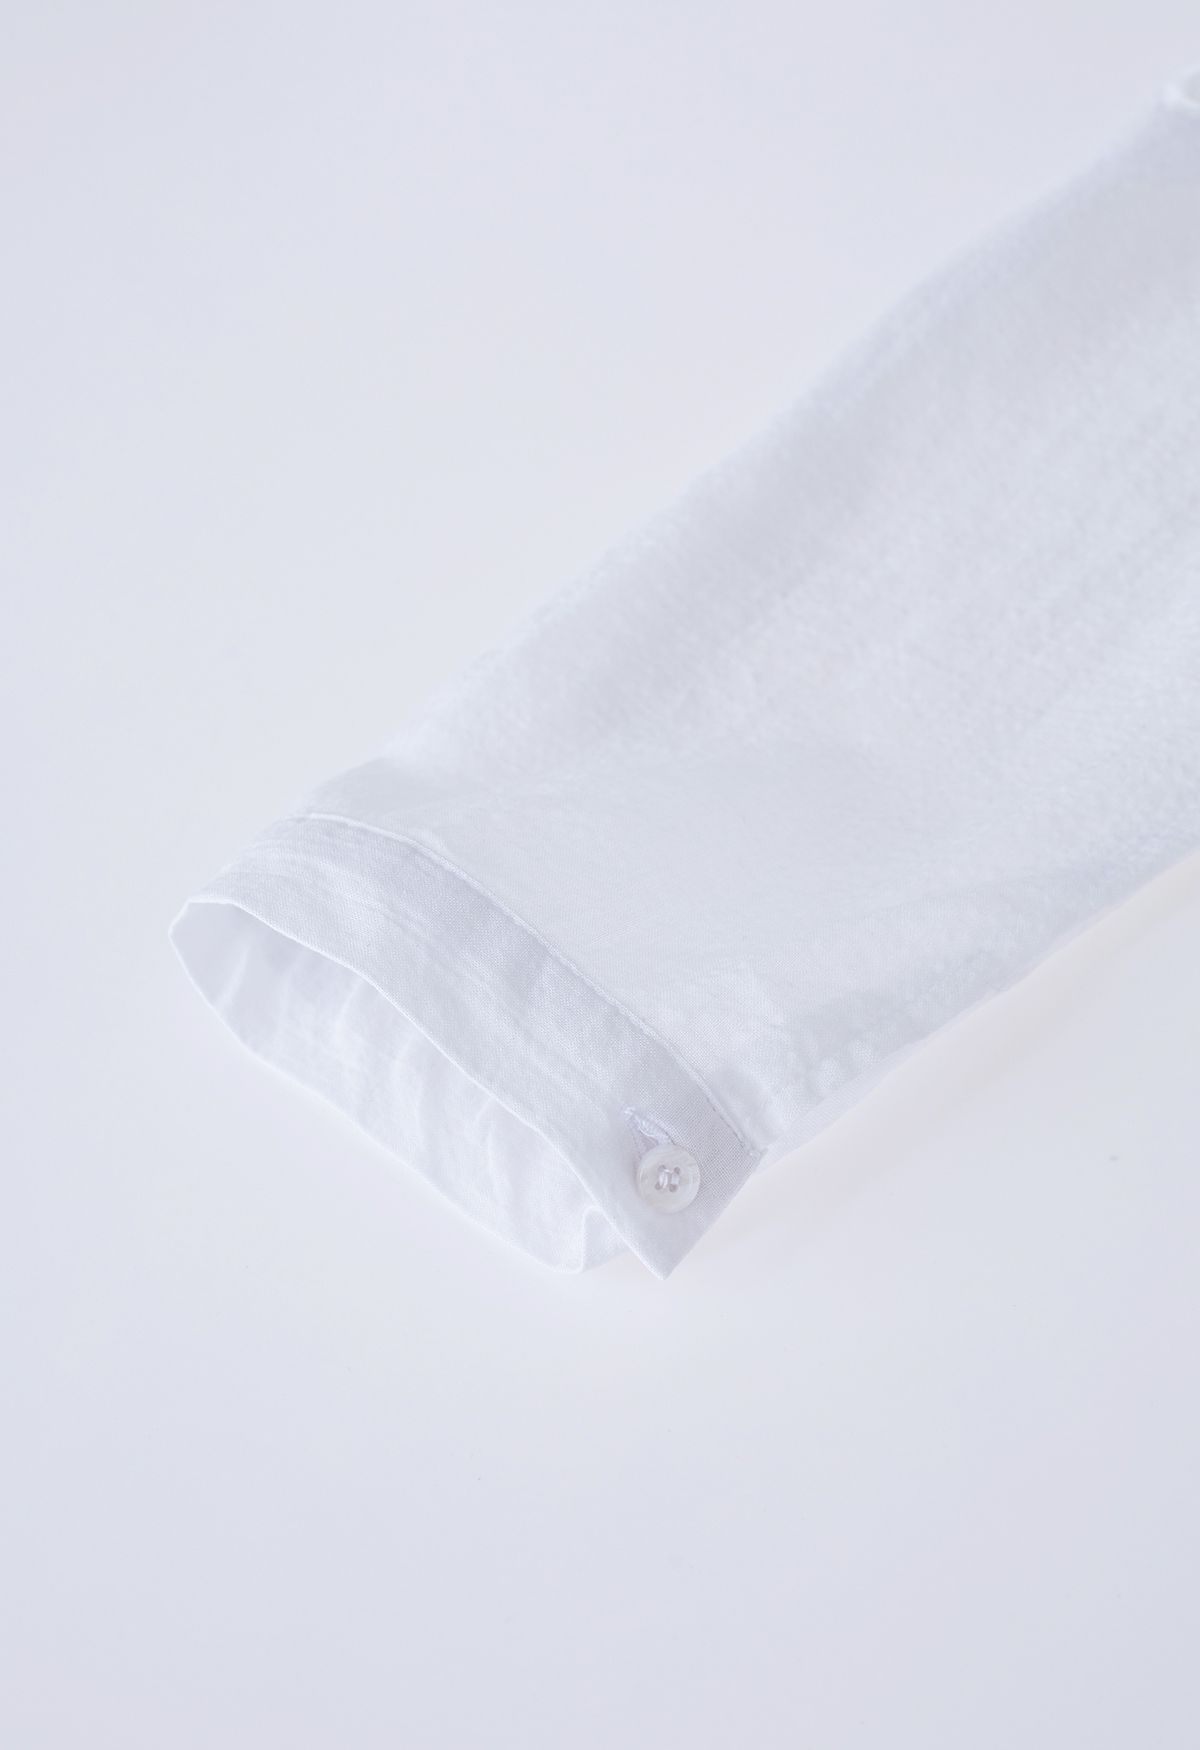 V-Neck Crochet Sleeve Cotton Top in White